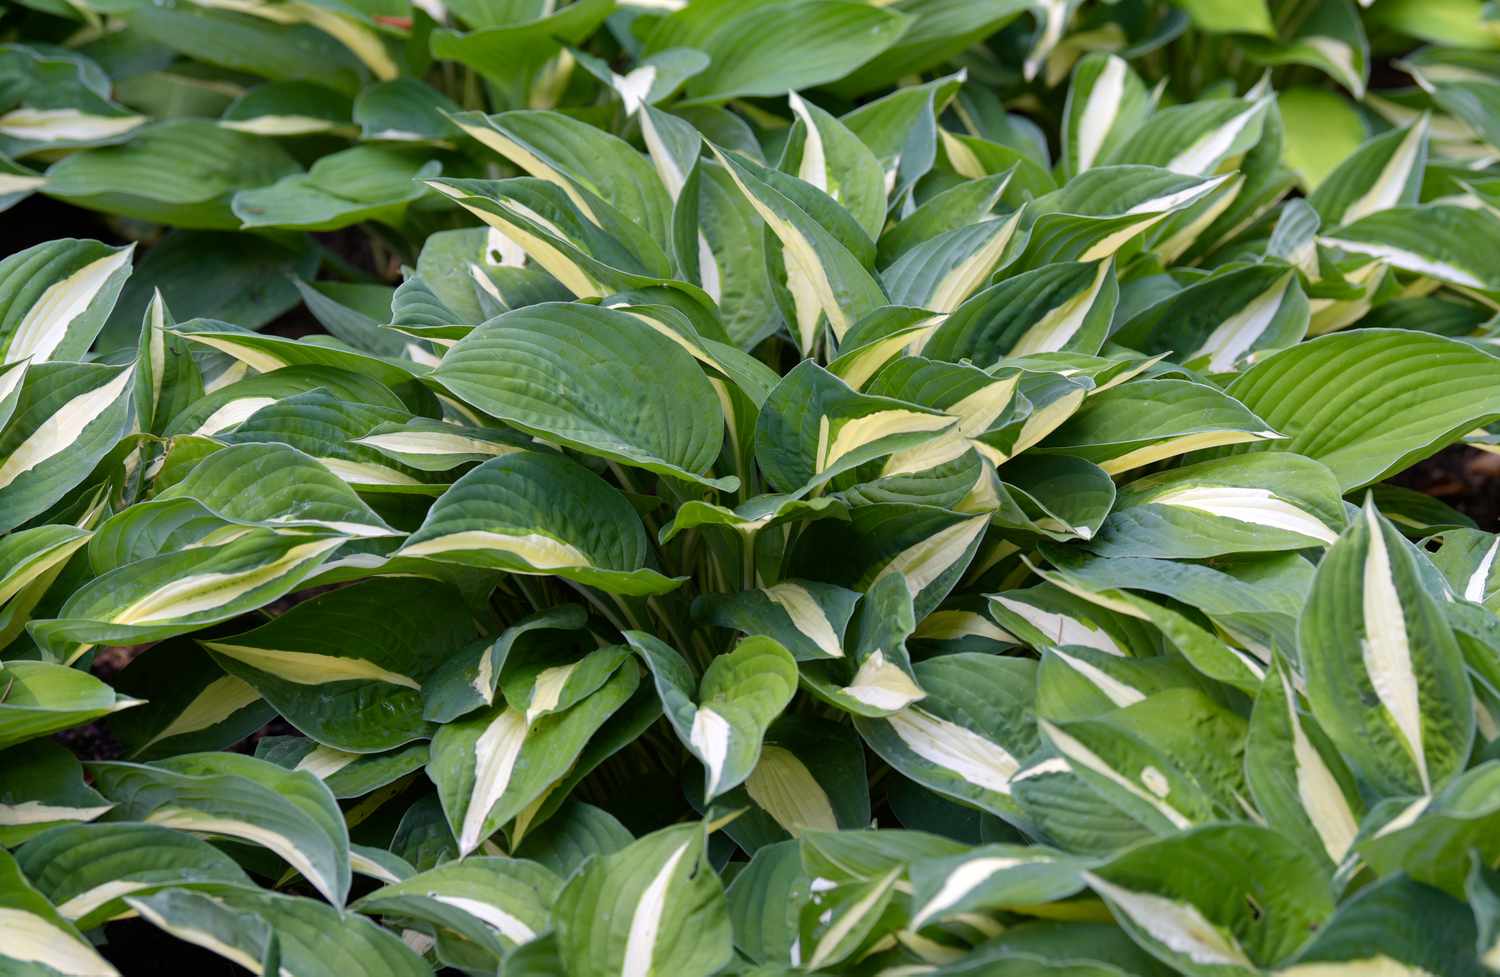 Primer plano de la planta Hosta con hojas abigarradas blancas, amarillas y verdes